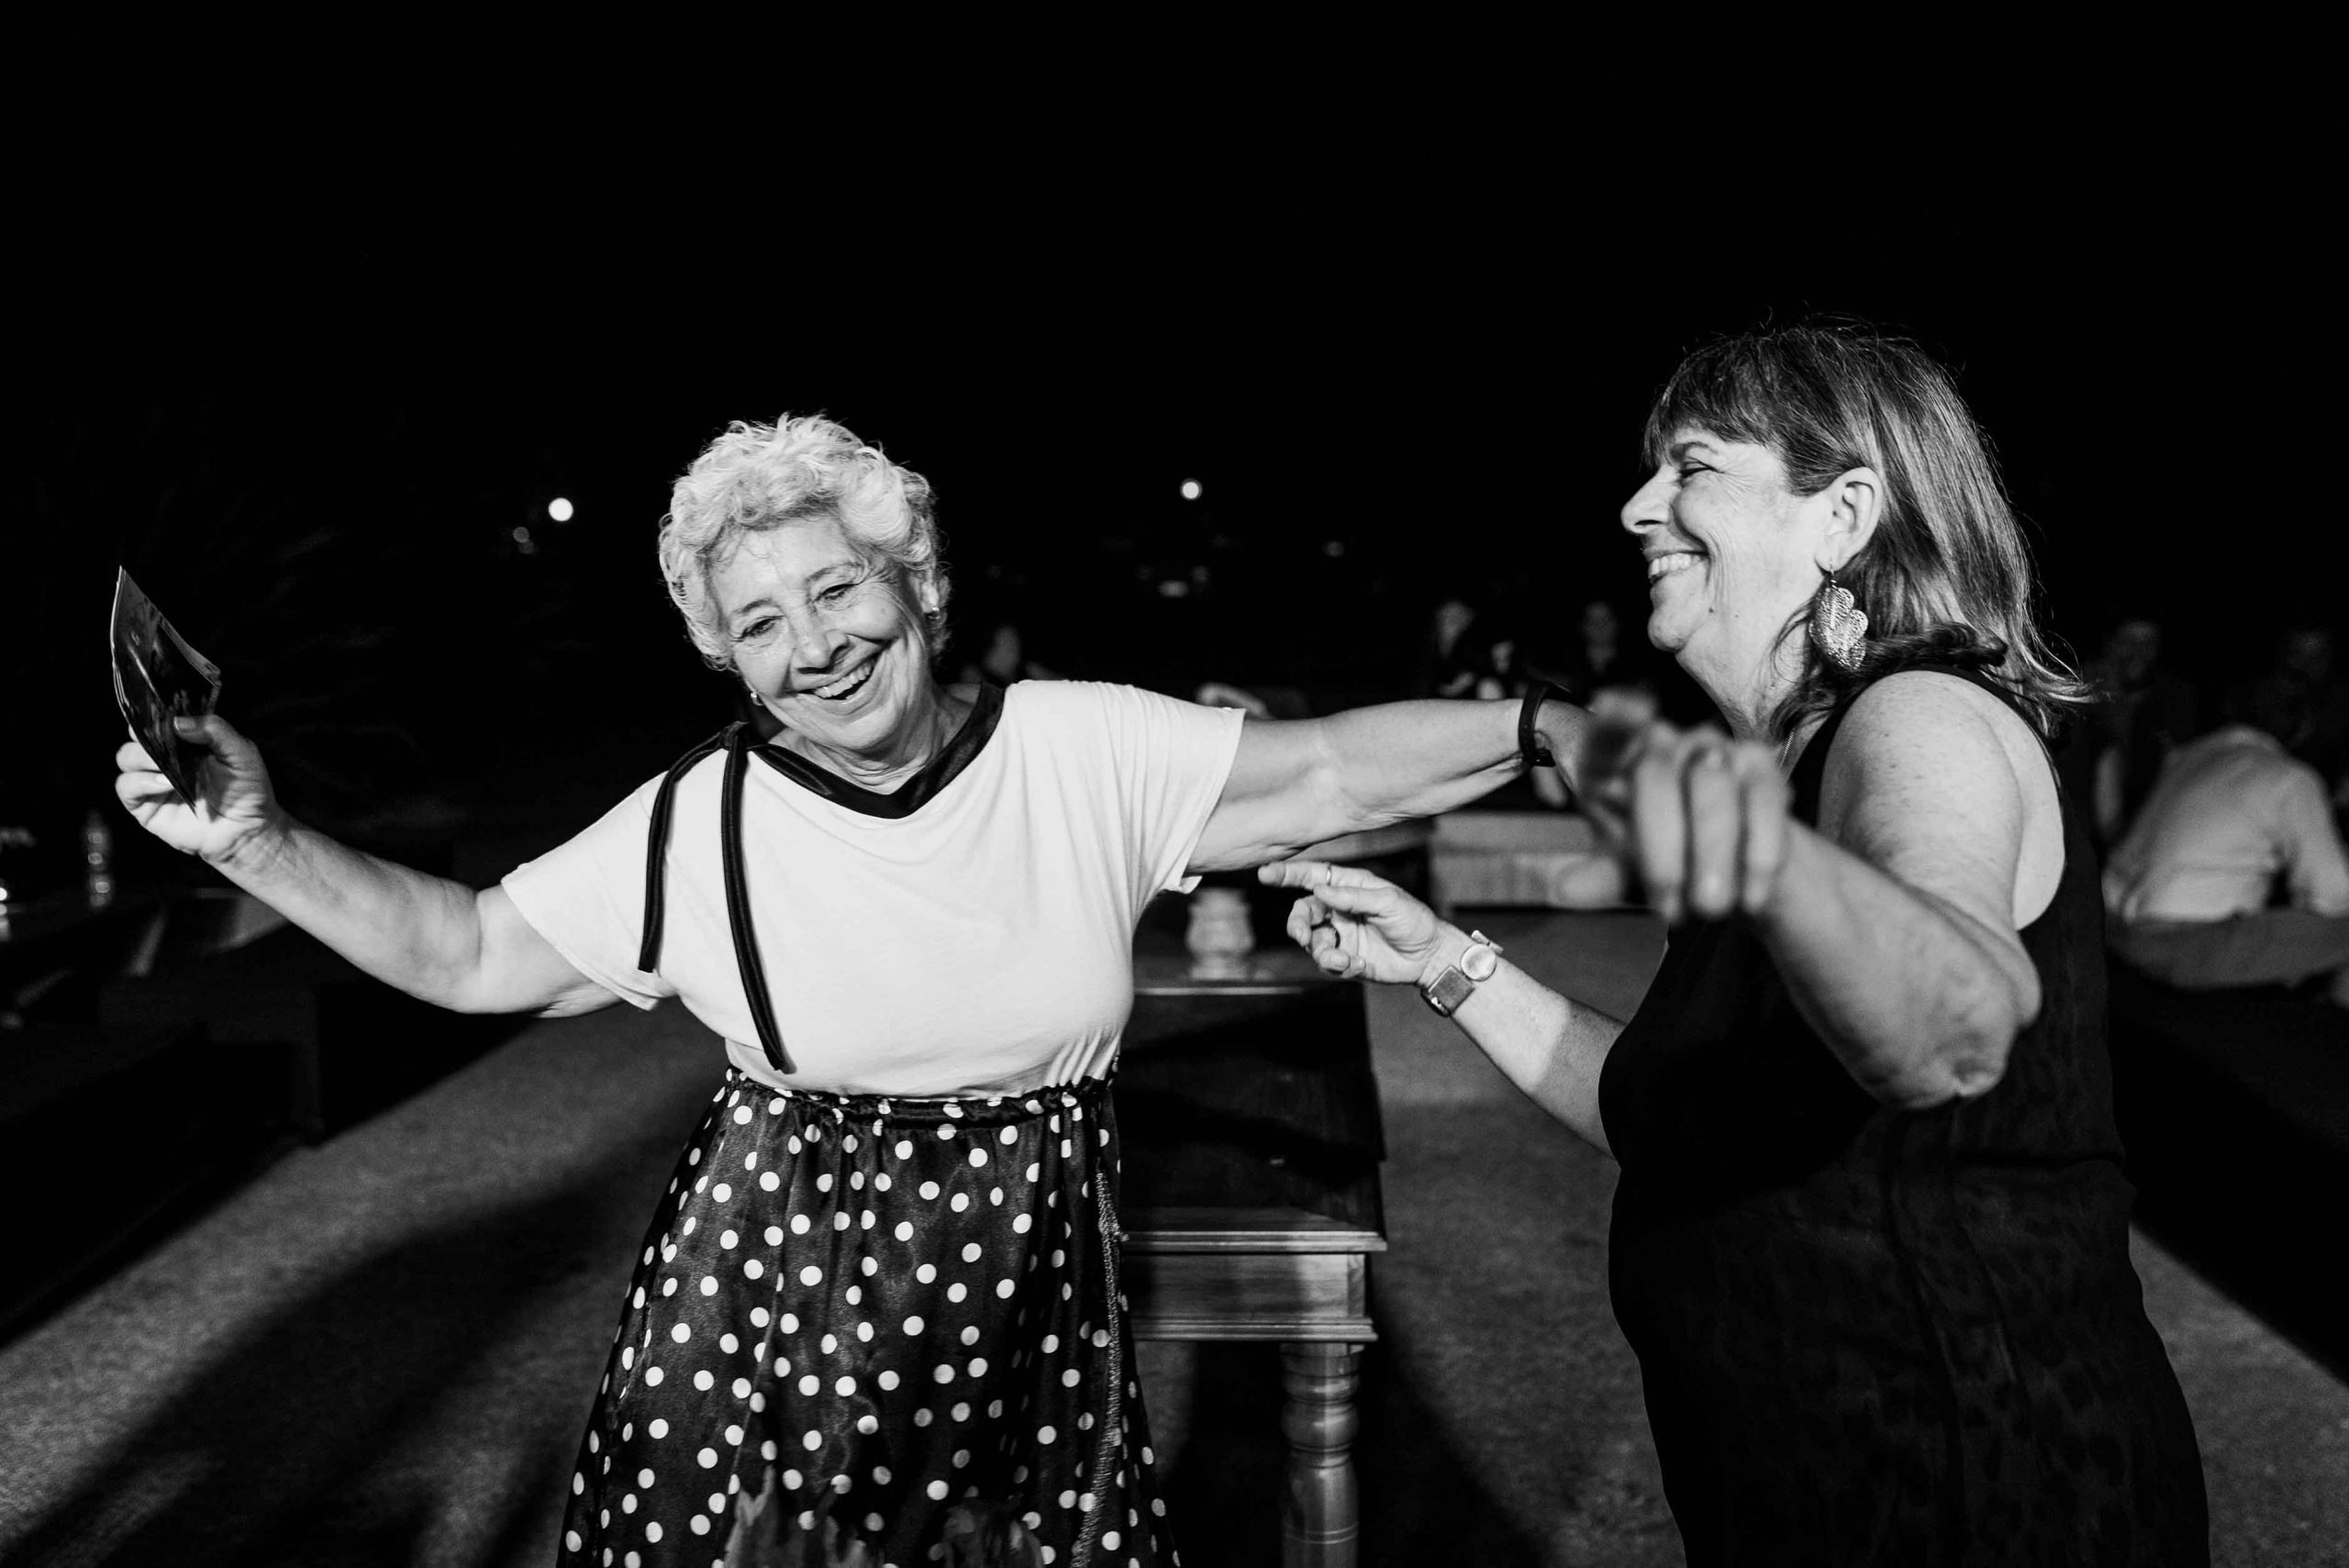 Fotos del cumpleaños de 40 de Mumi  en Rosario realizadas por Bucle Fotografias Flor Bosio y Caro Clerici